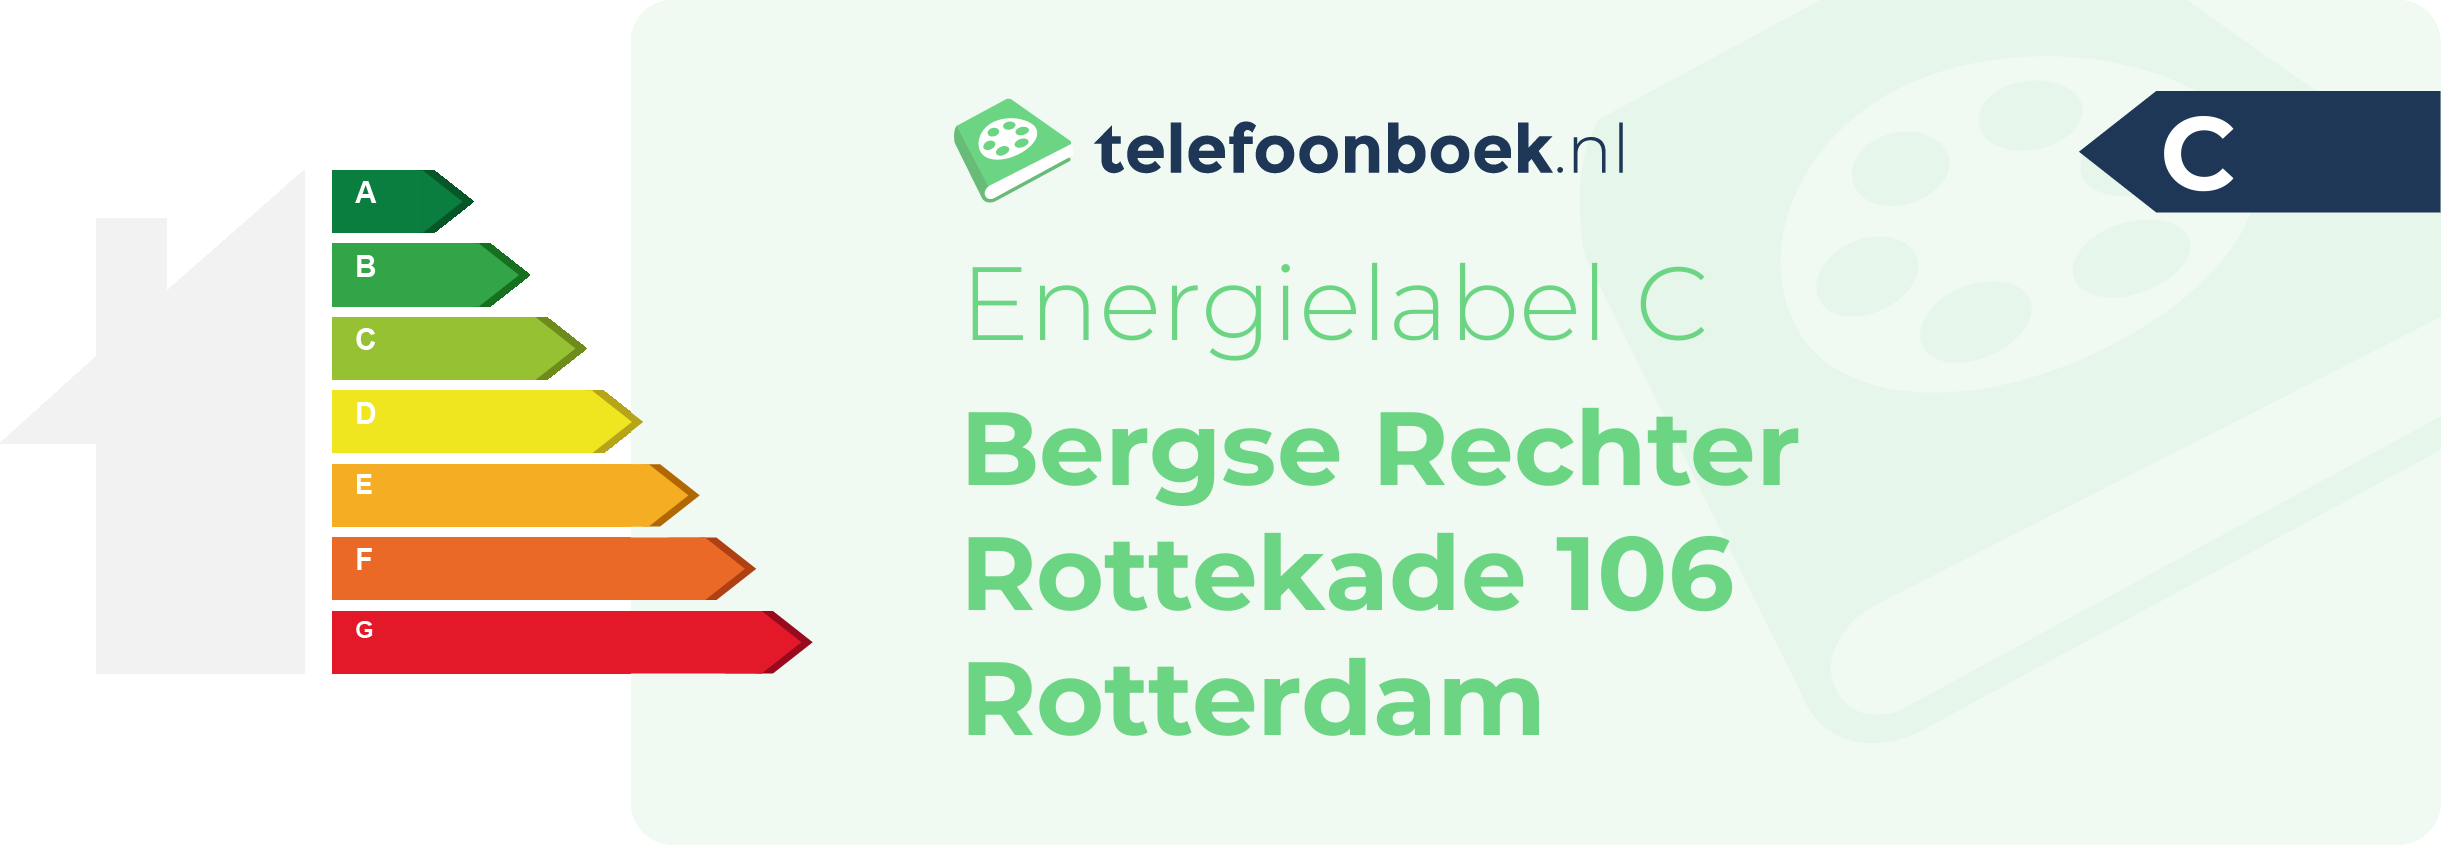 Energielabel Bergse Rechter Rottekade 106 Rotterdam